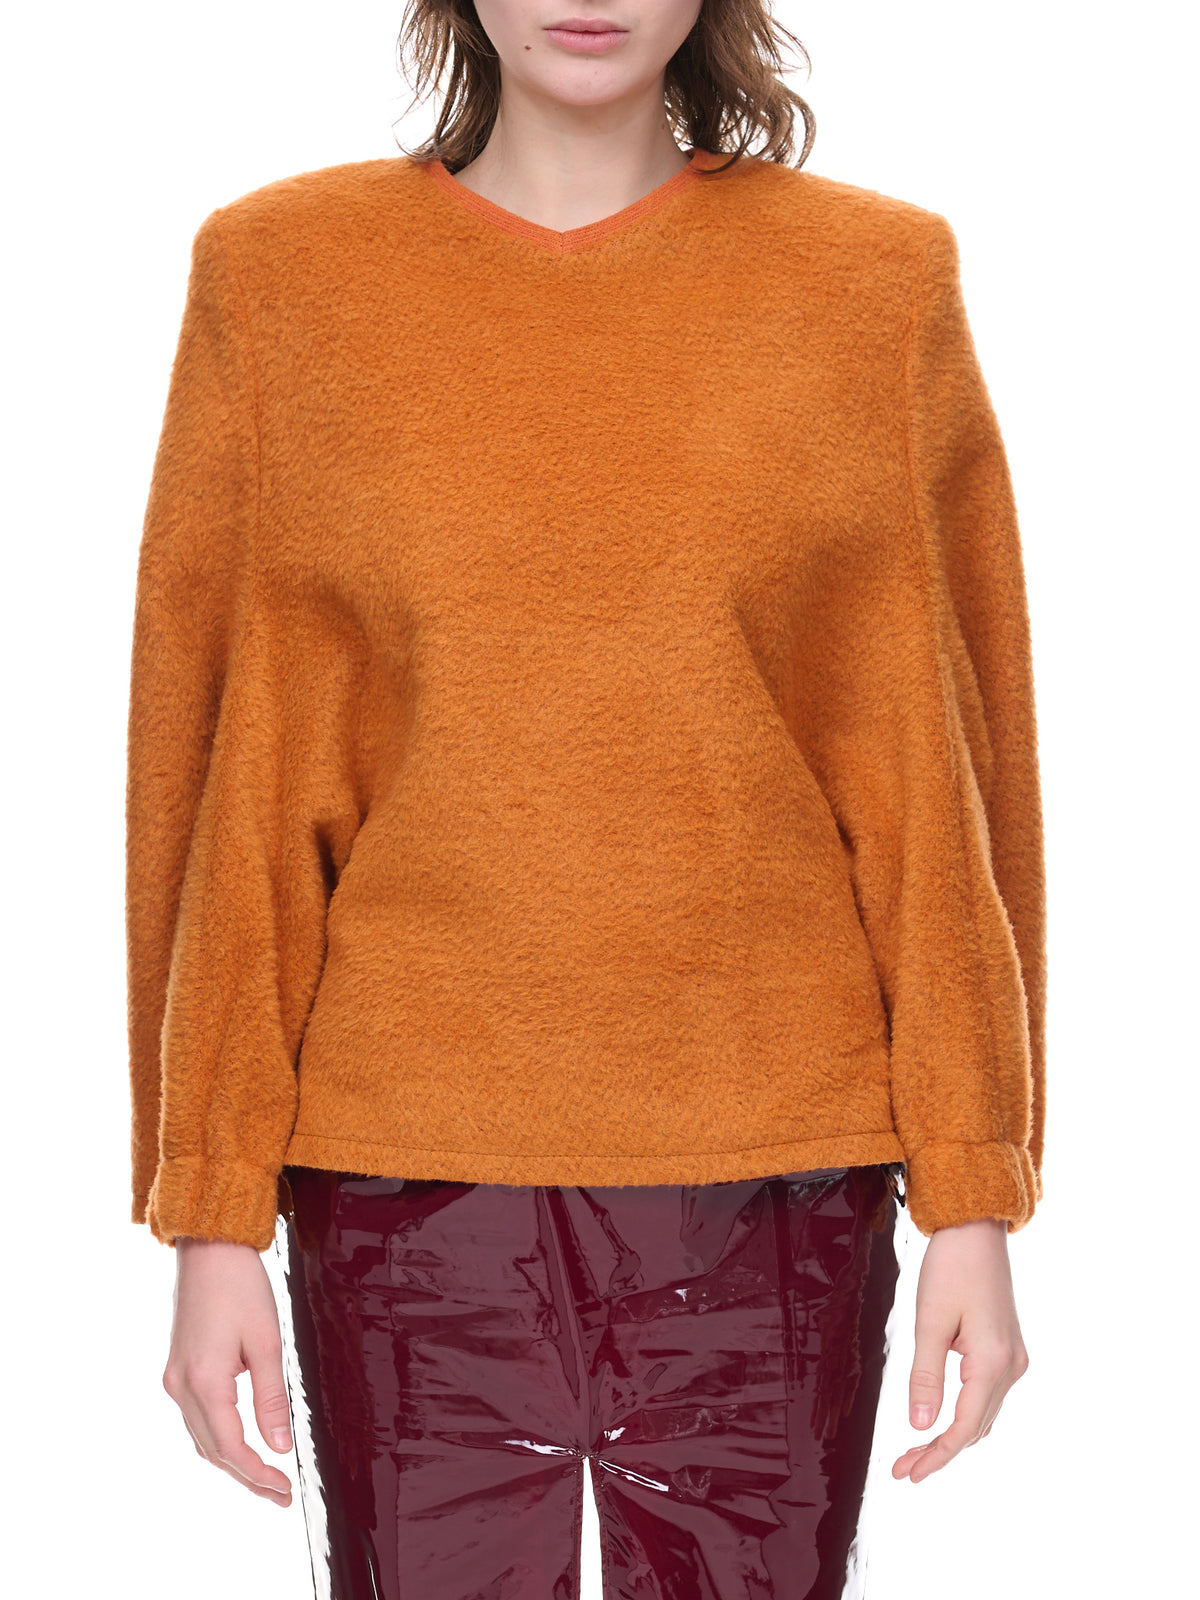 Caramel Sweater (UN-TOP-CARA-1-CARAMEL)